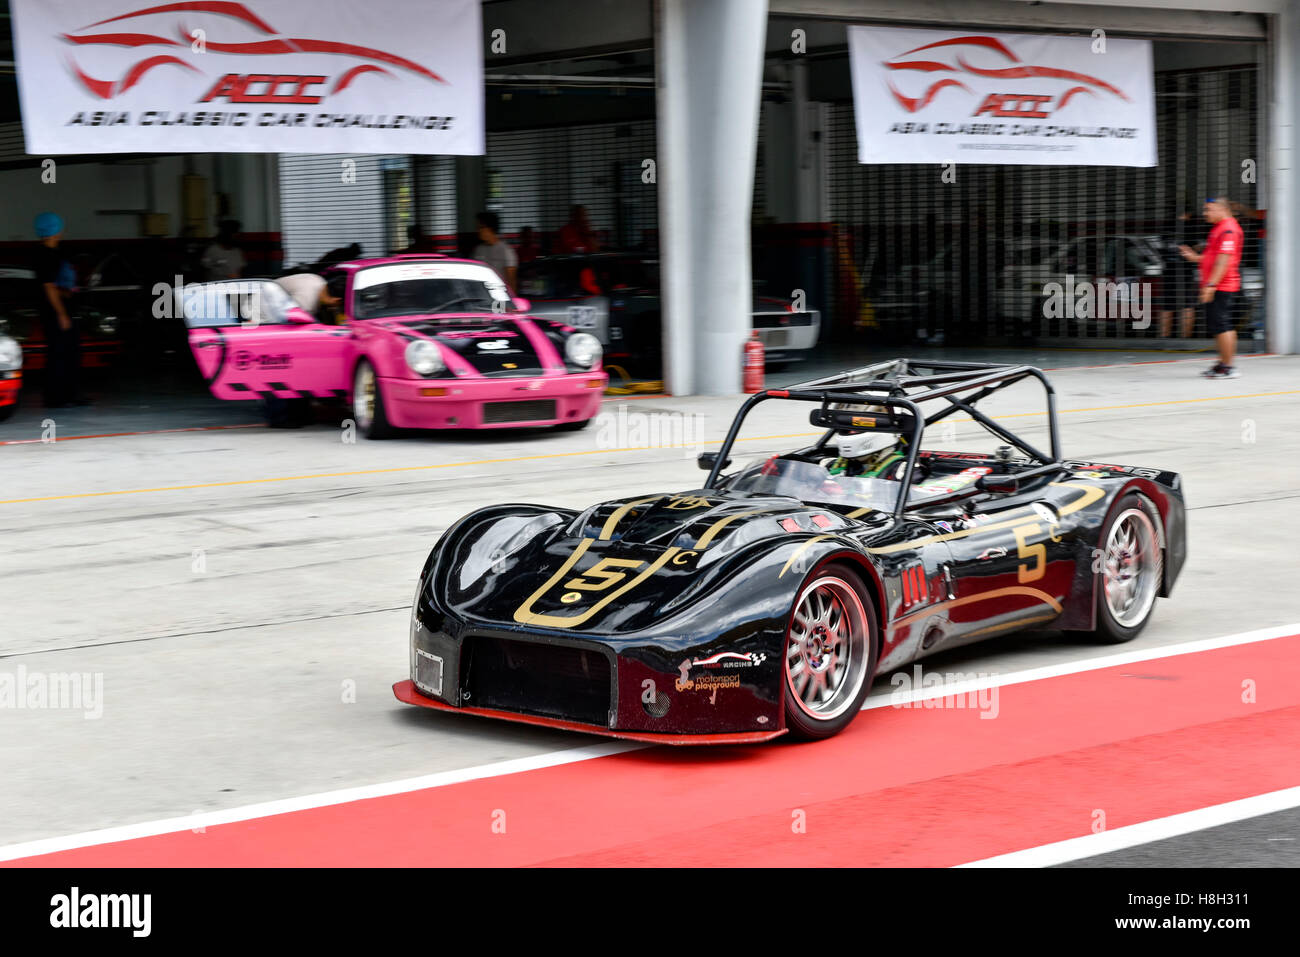 Kelvin Davies la conduite (5) Sylva Phoenix pendant la session d'échauffement de theAsia Défi voiture classique le 12 novembre 2016 au Circuit International de Sepang à Kuala Lumpur, Malaisie. Banque D'Images